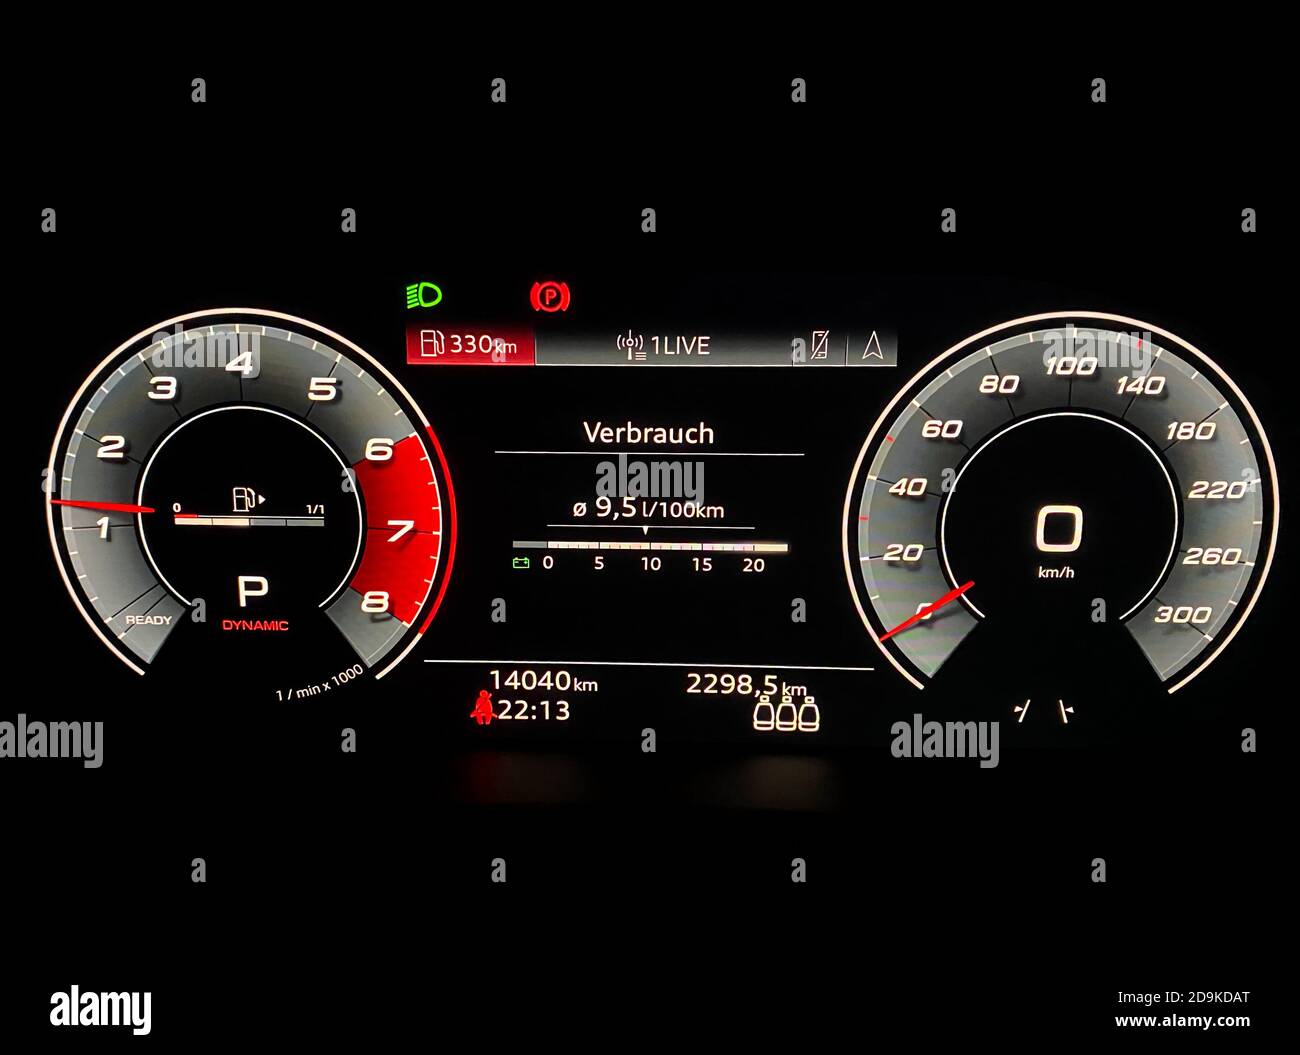 Viersen, Allemagne - novembre 4. 2020 : gros plan de l'écran de commande du véhicule Audi A5 éclairé Banque D'Images